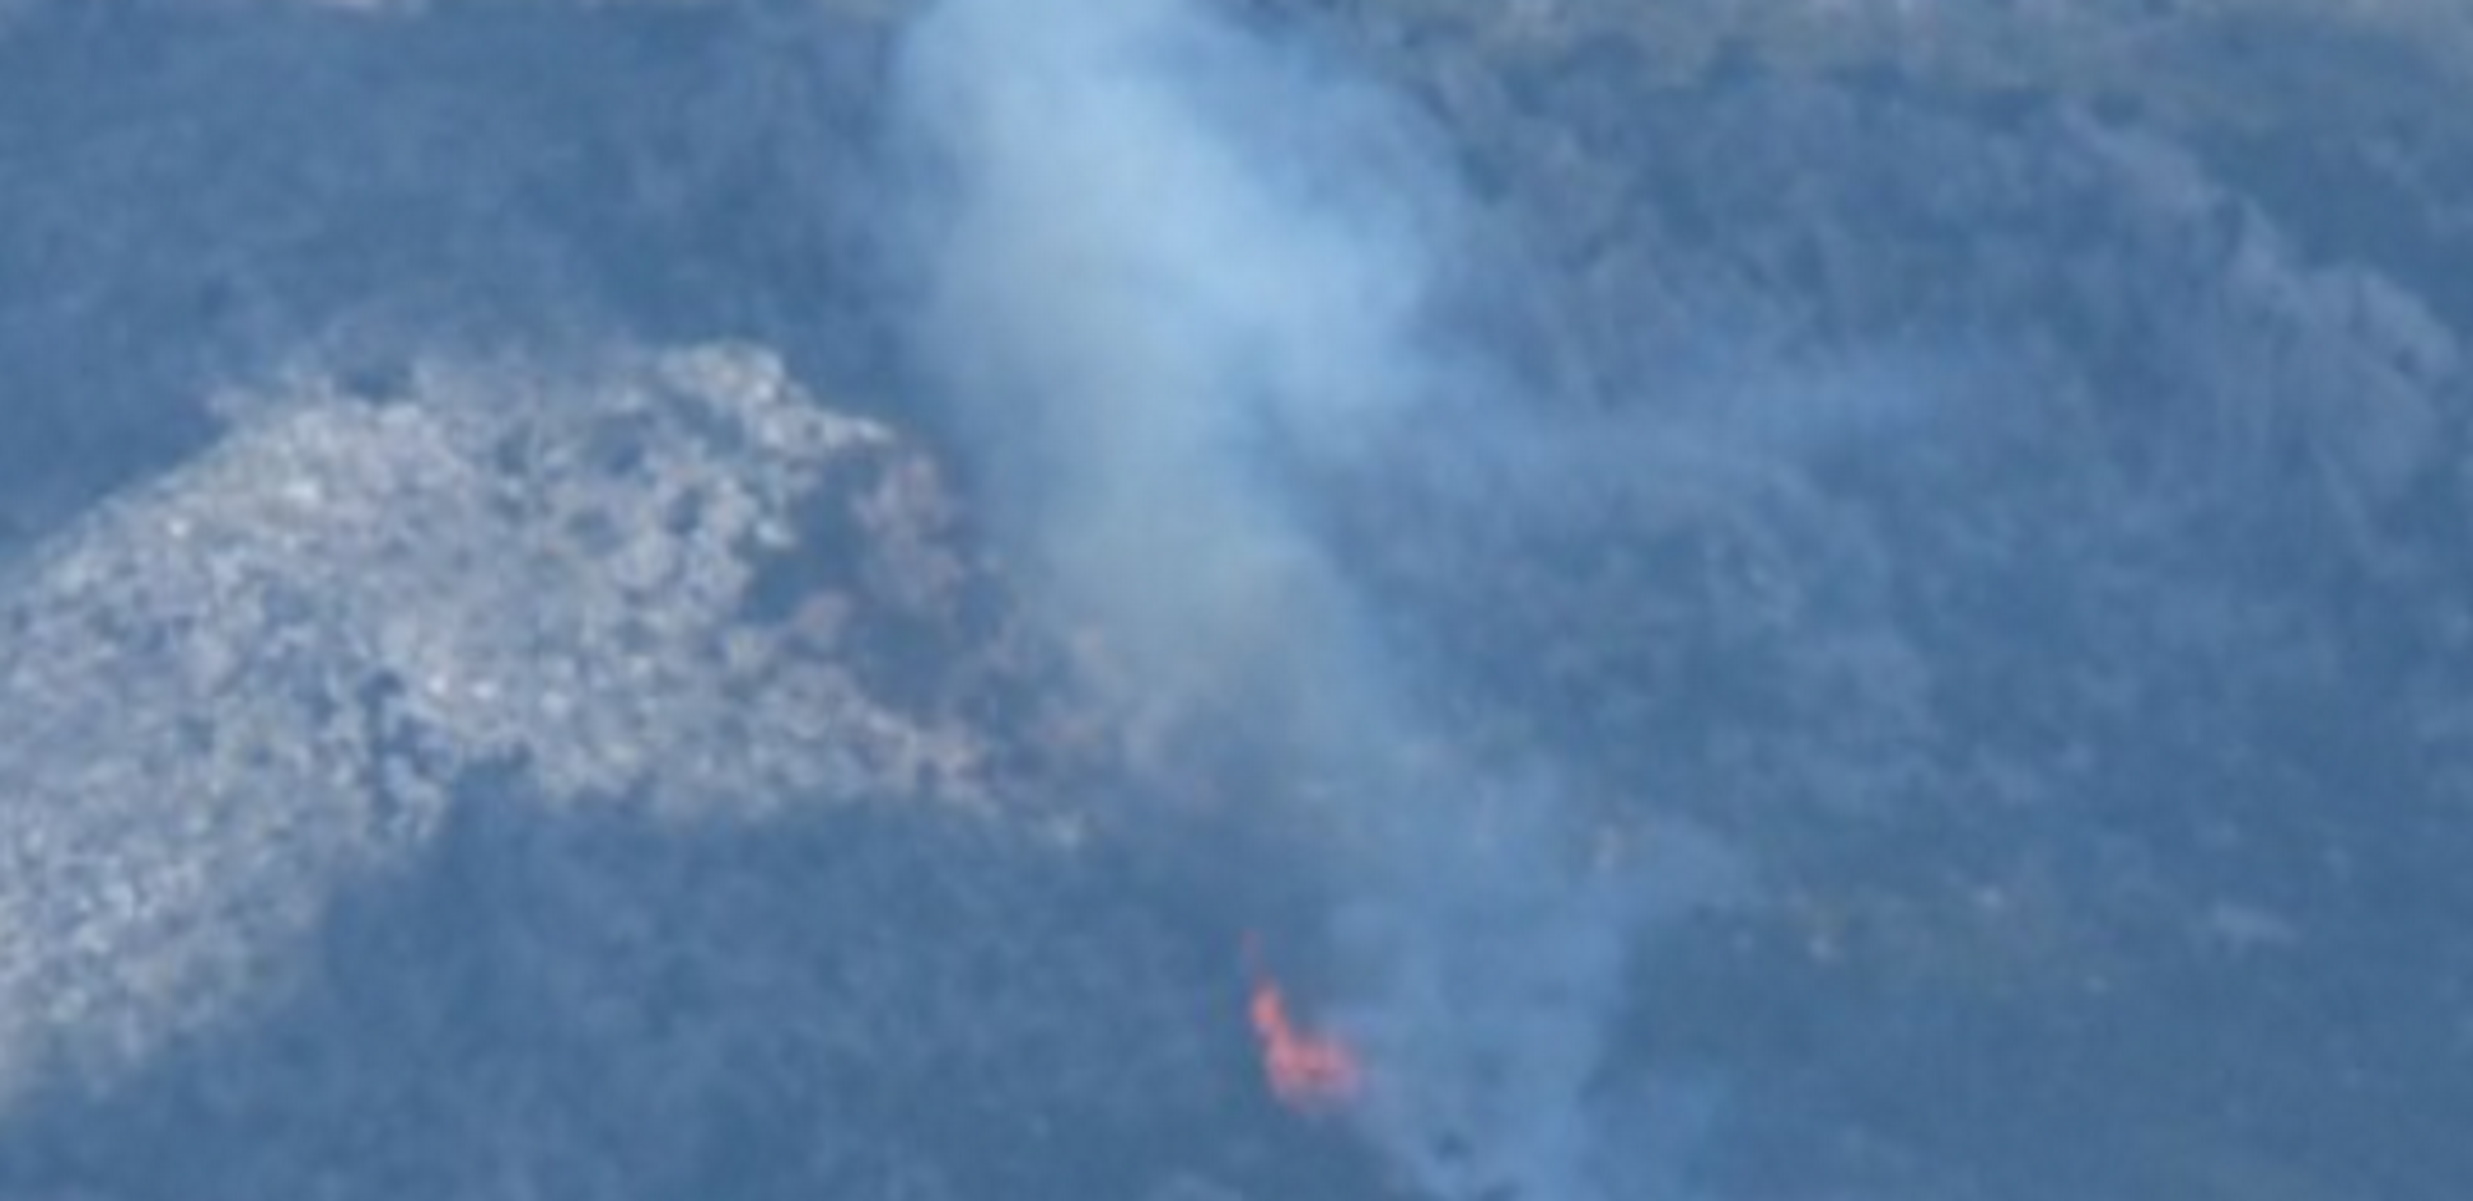 Μεγάλη φωτιά σε δάσος στο Λουτράκι – Πνέουν πολύ ισχυροί άνεμοι